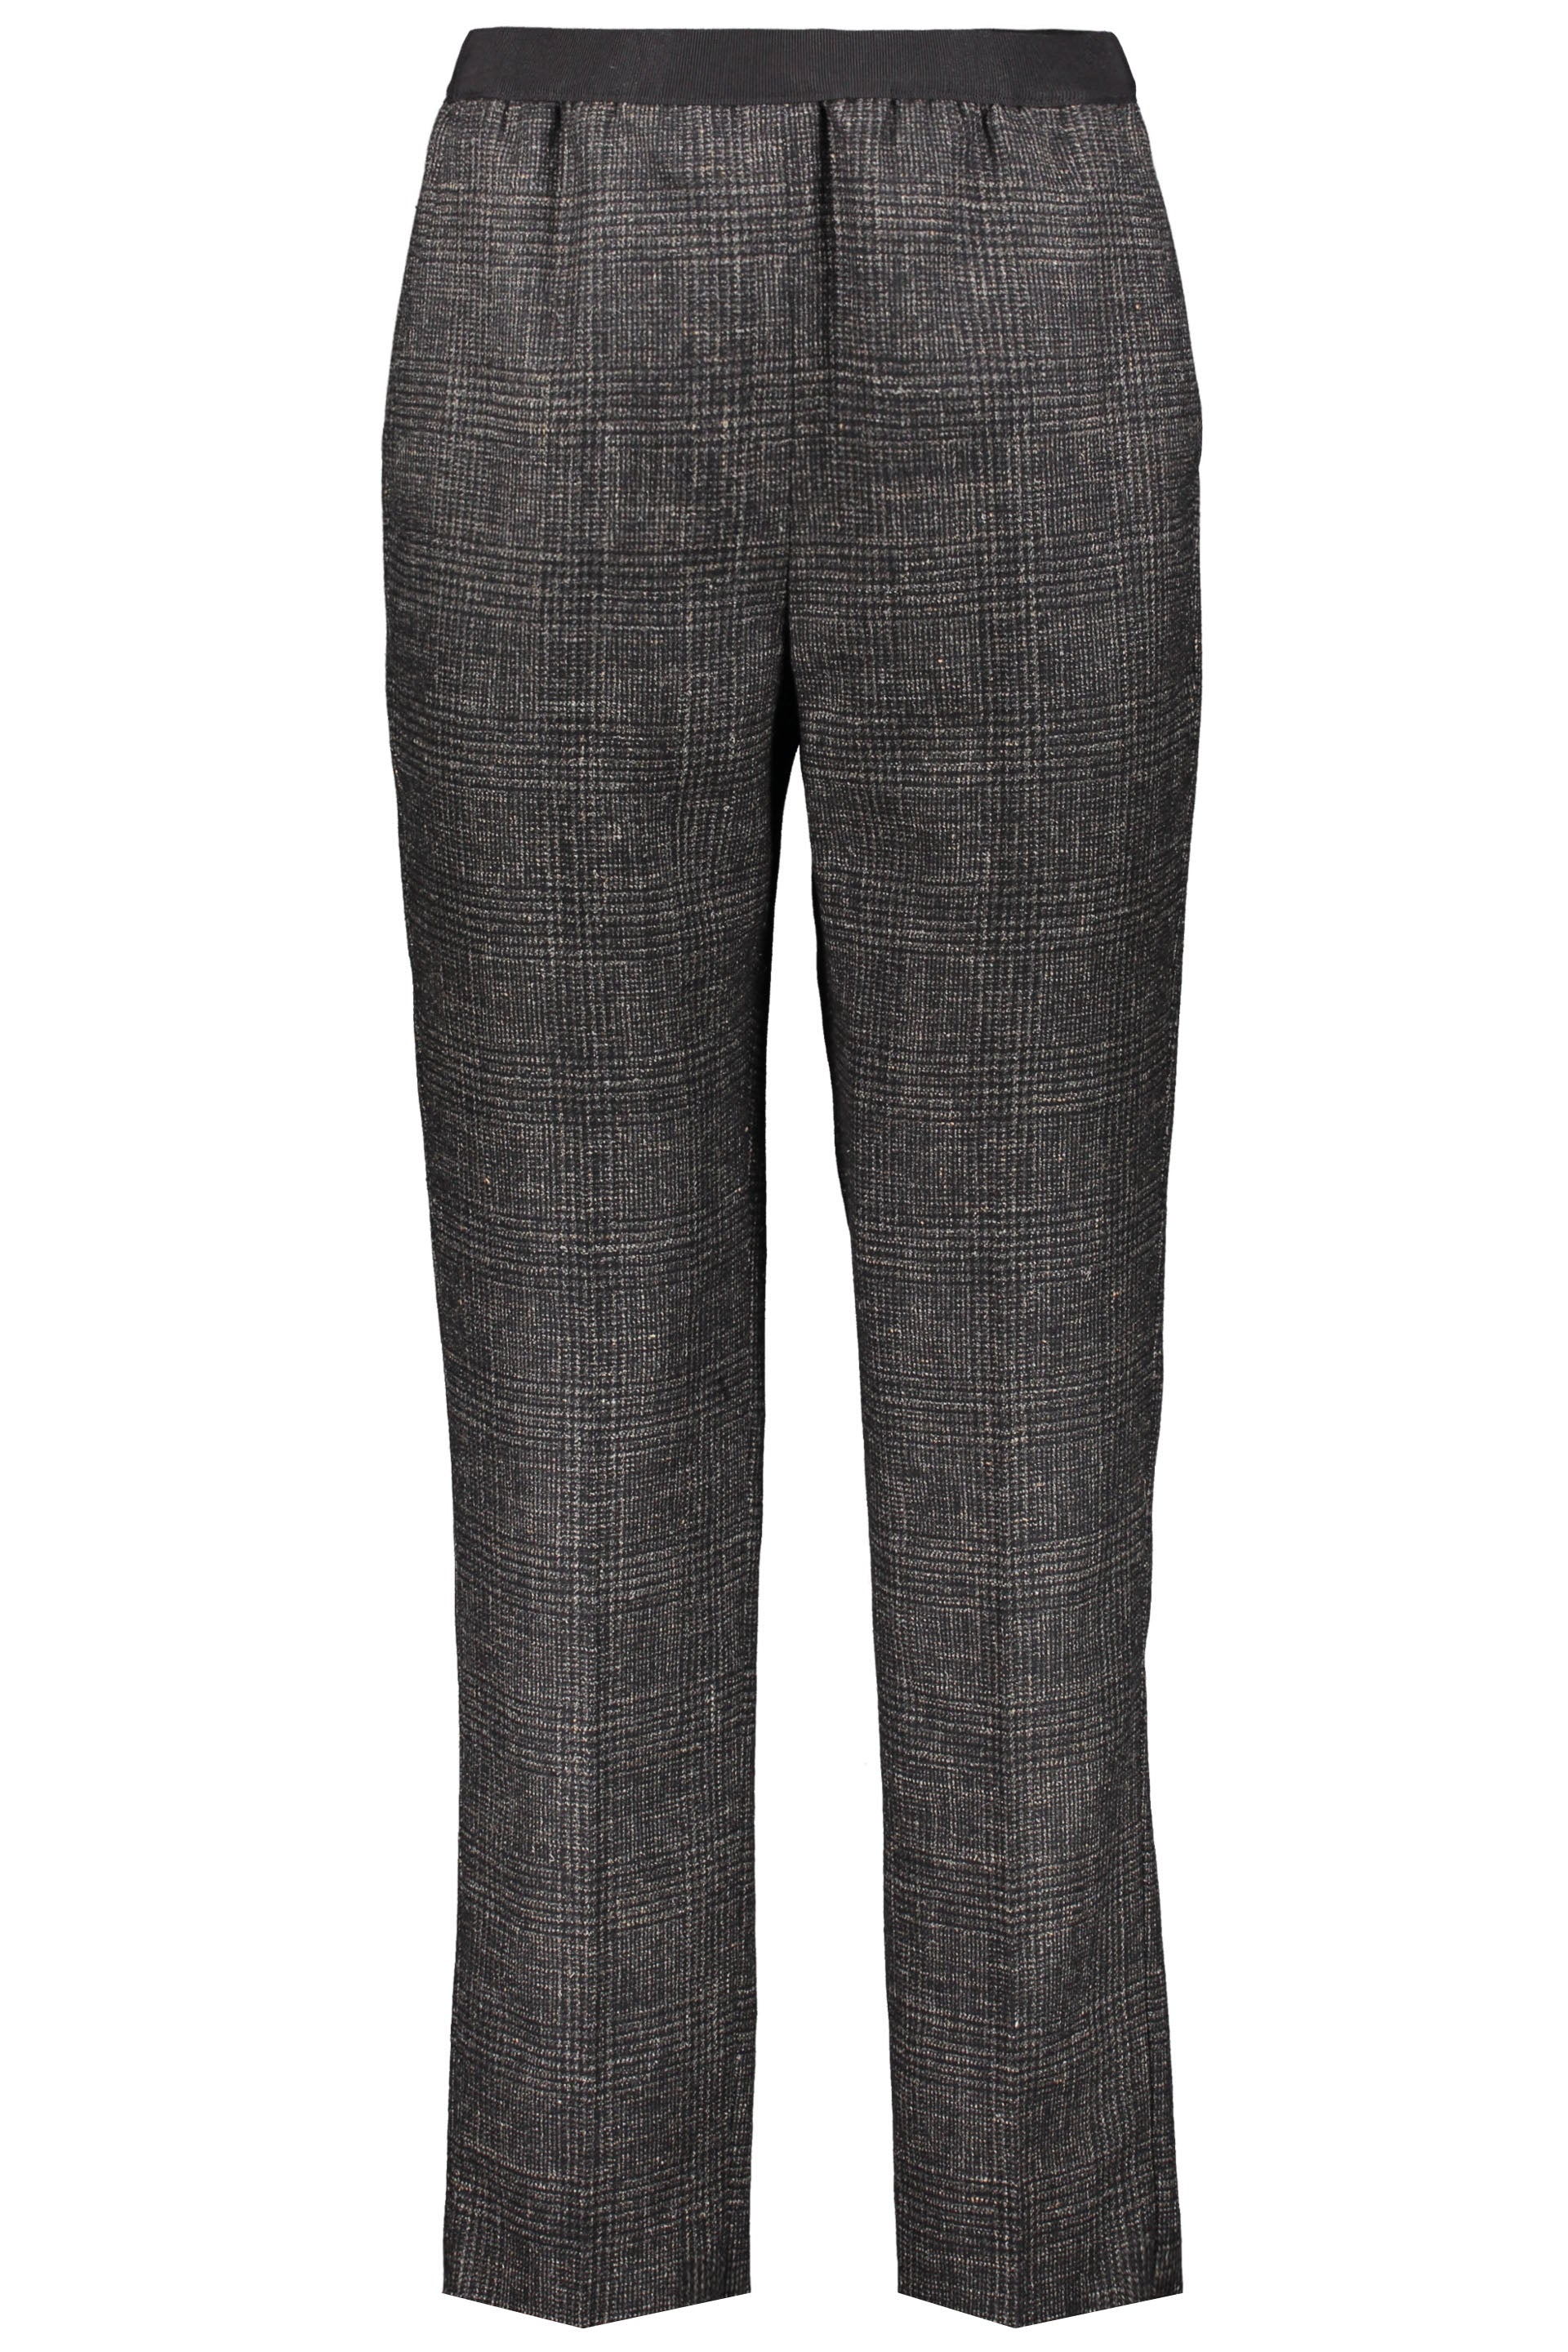 Agnona-OUTLET-SALE-Long-trousers-Hosen-40-ARCHIVE-COLLECTION.jpg